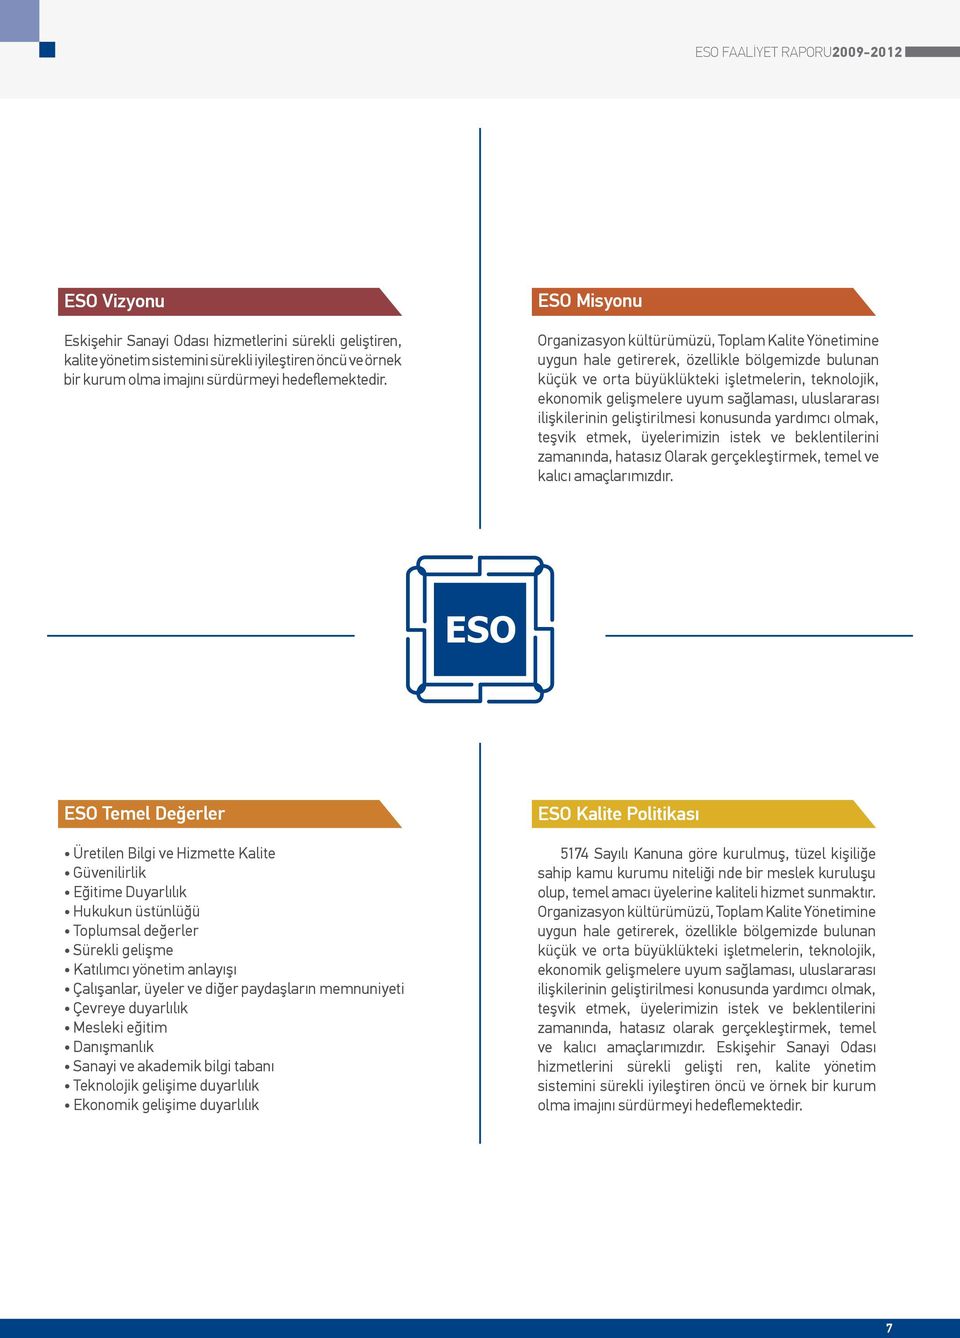 ESO Misyonu Organizasyon kültürümüzü, Toplam Kalite Yönetimine uygun hale getirerek, özellikle bölgemizde bulunan küçük ve orta büyüklükteki işletmelerin, teknolojik, ekonomik gelişmelere uyum